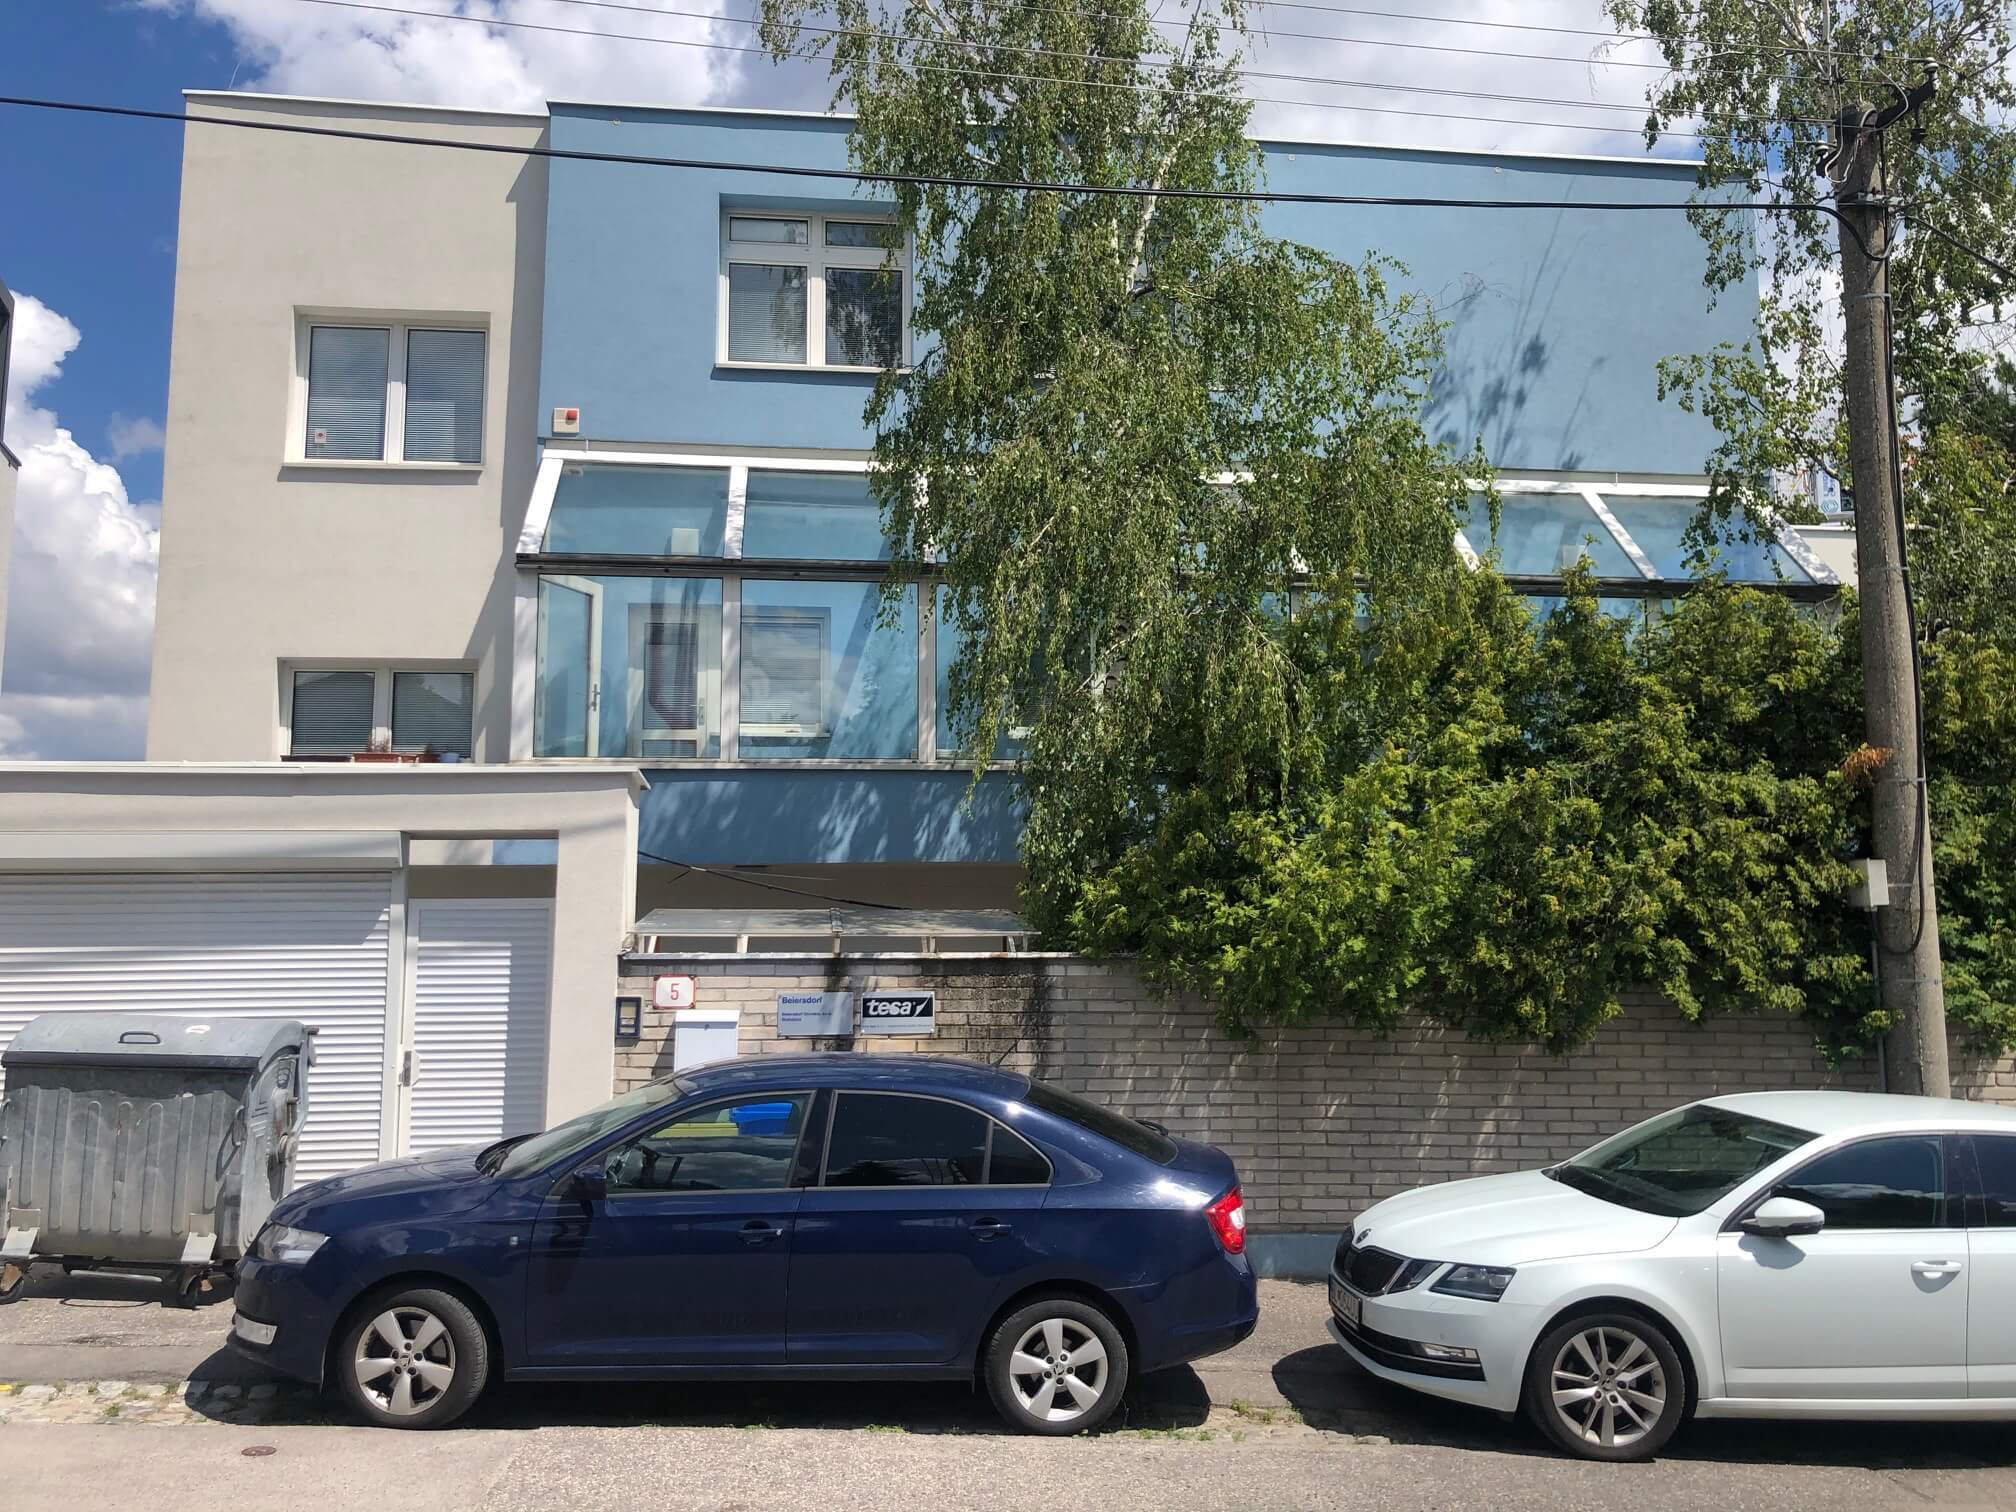 Troj podlažná budova s 10 kanceláriami, Riznerova ulica v Bratislave, nad hradom, úžitková 610m2-19